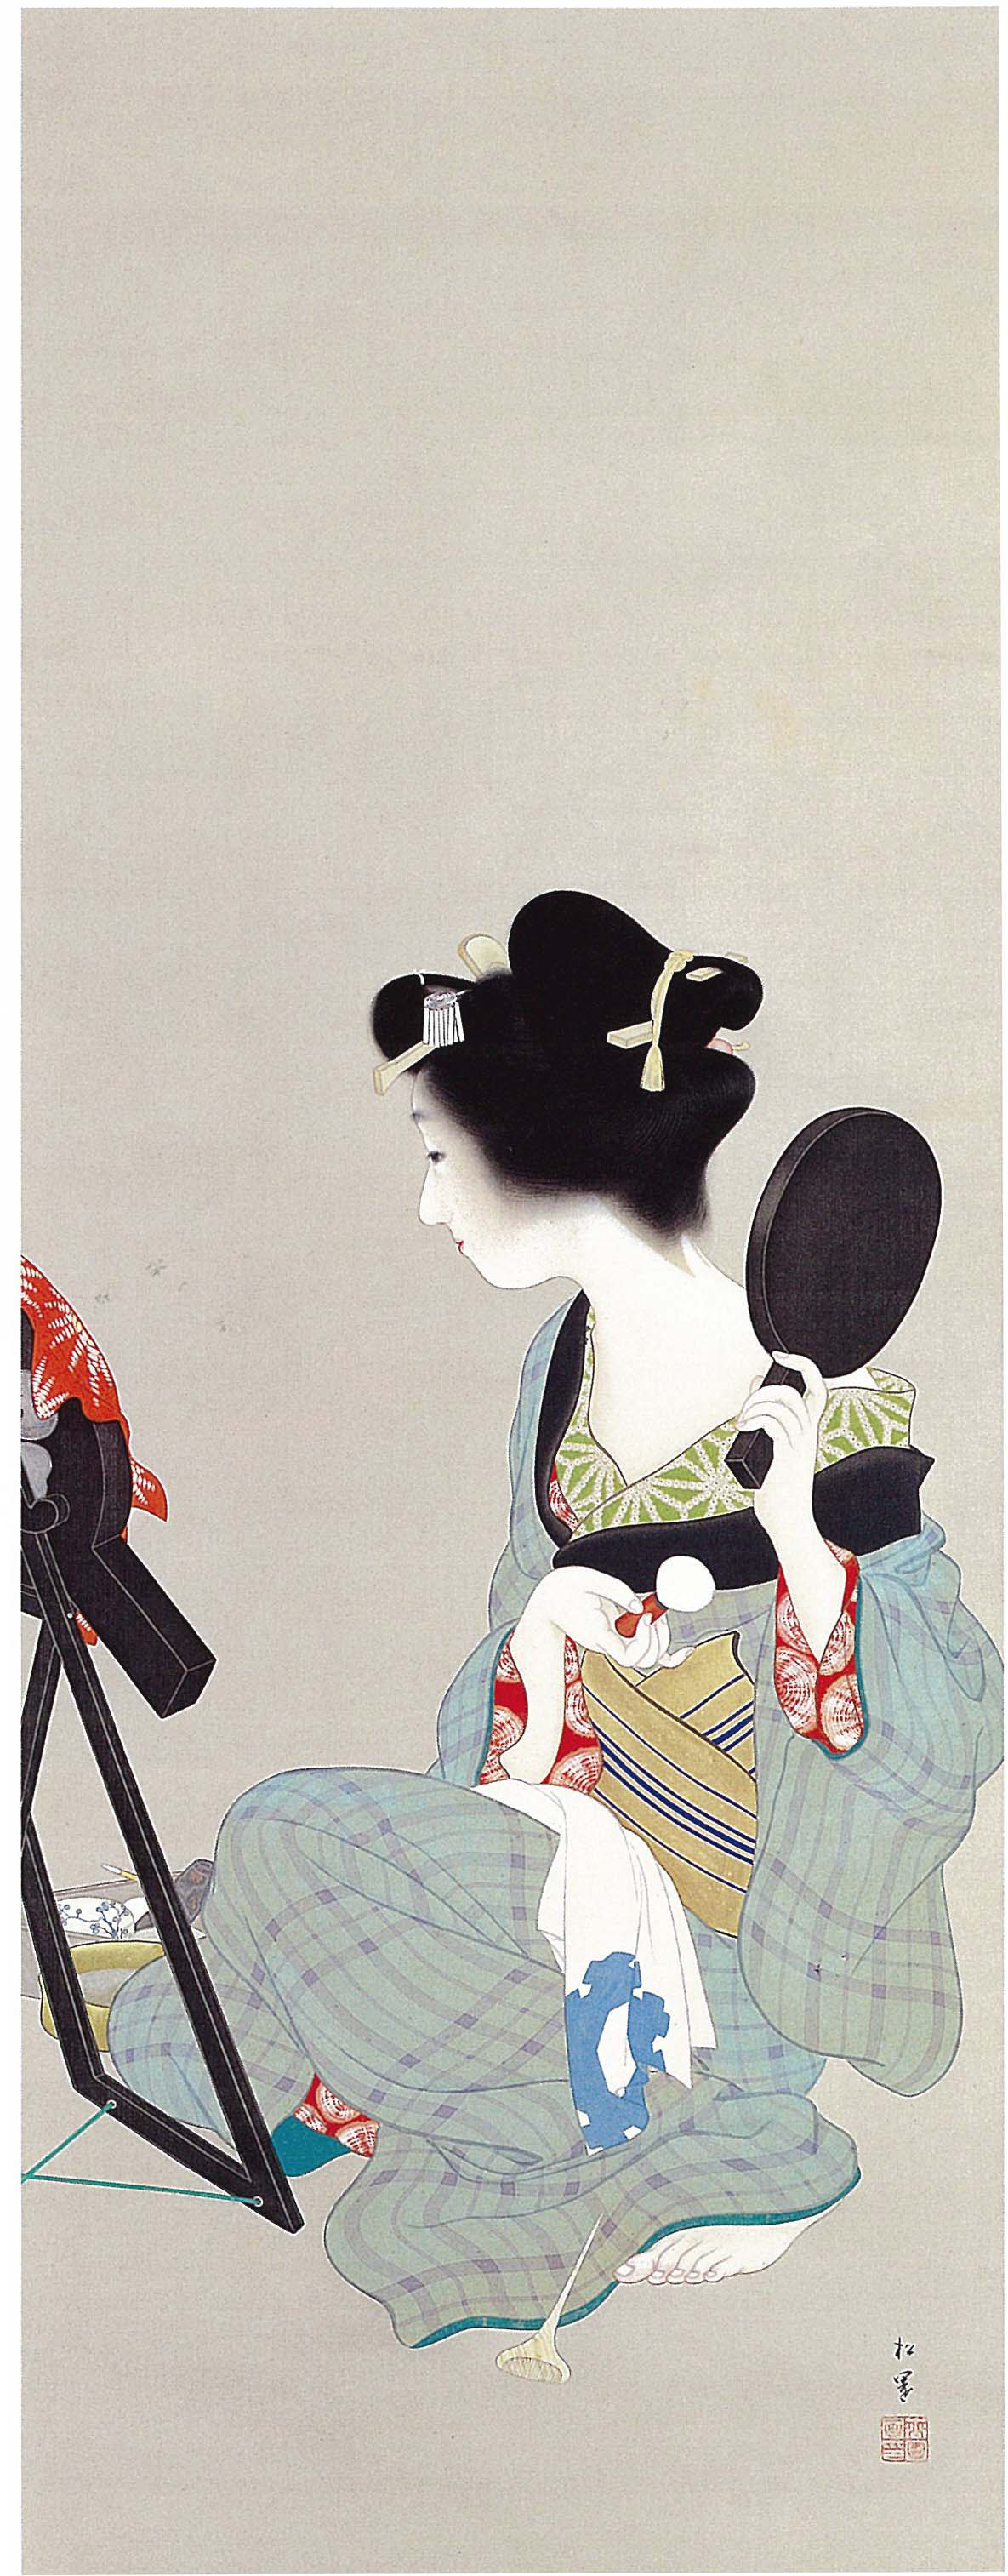 Uemura Shōen - April 23, 1875 - August 27, 1949